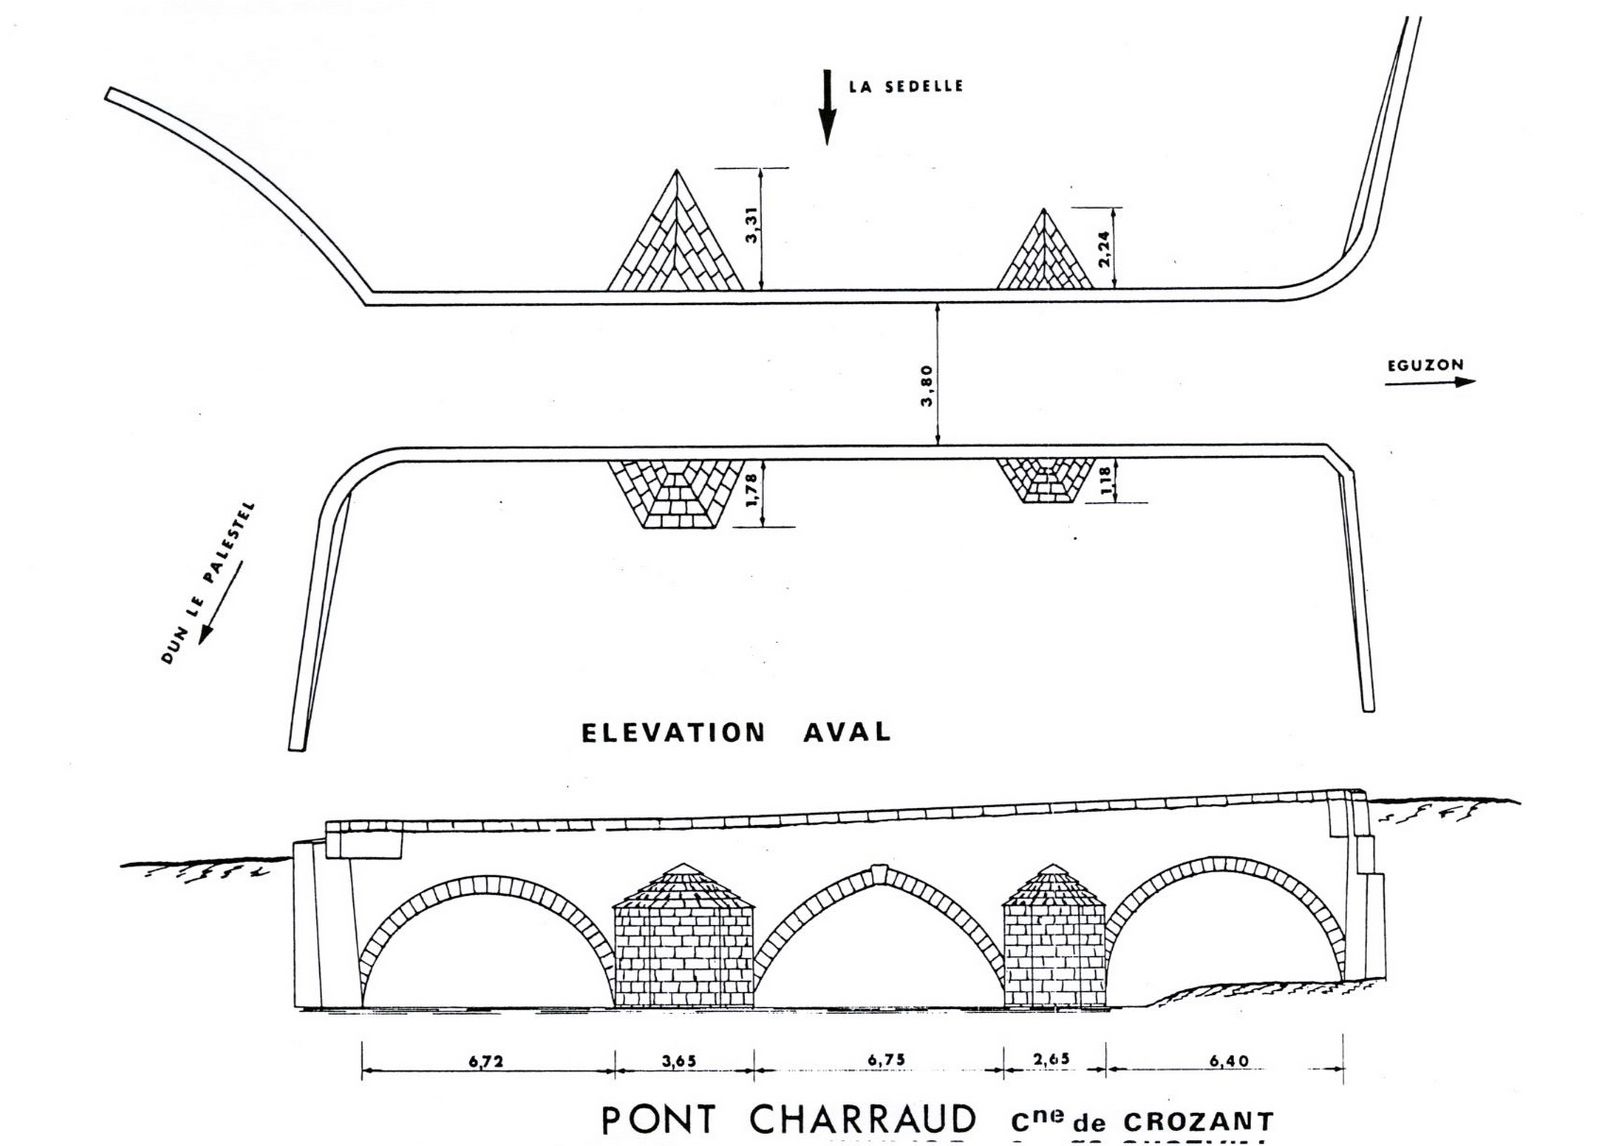 Plan en coupe et plan de l'élévation en aval du pont Charraud. 